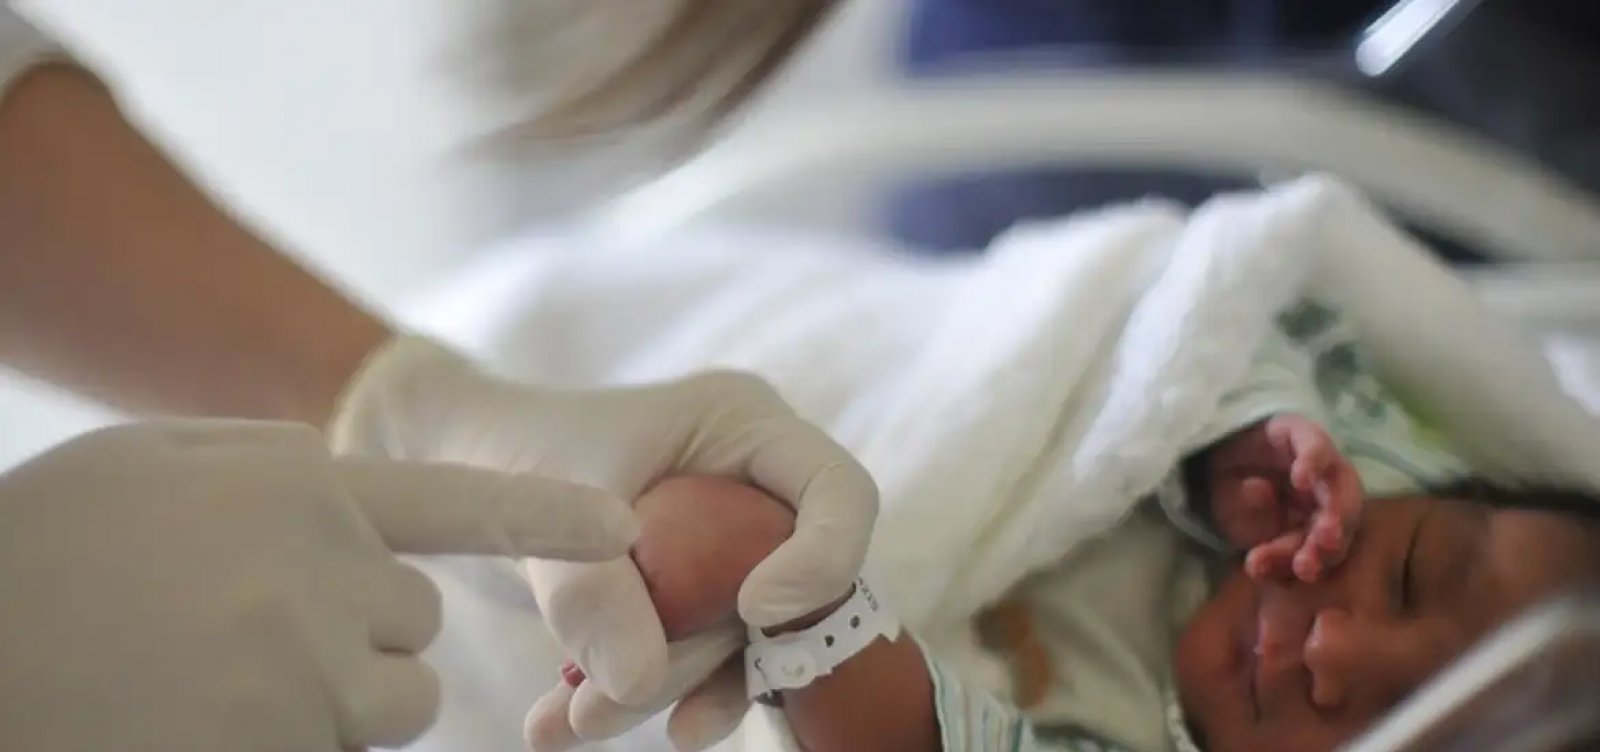 Bebê toma vacina errada e Justiça determina indenização de R$ 70 mil